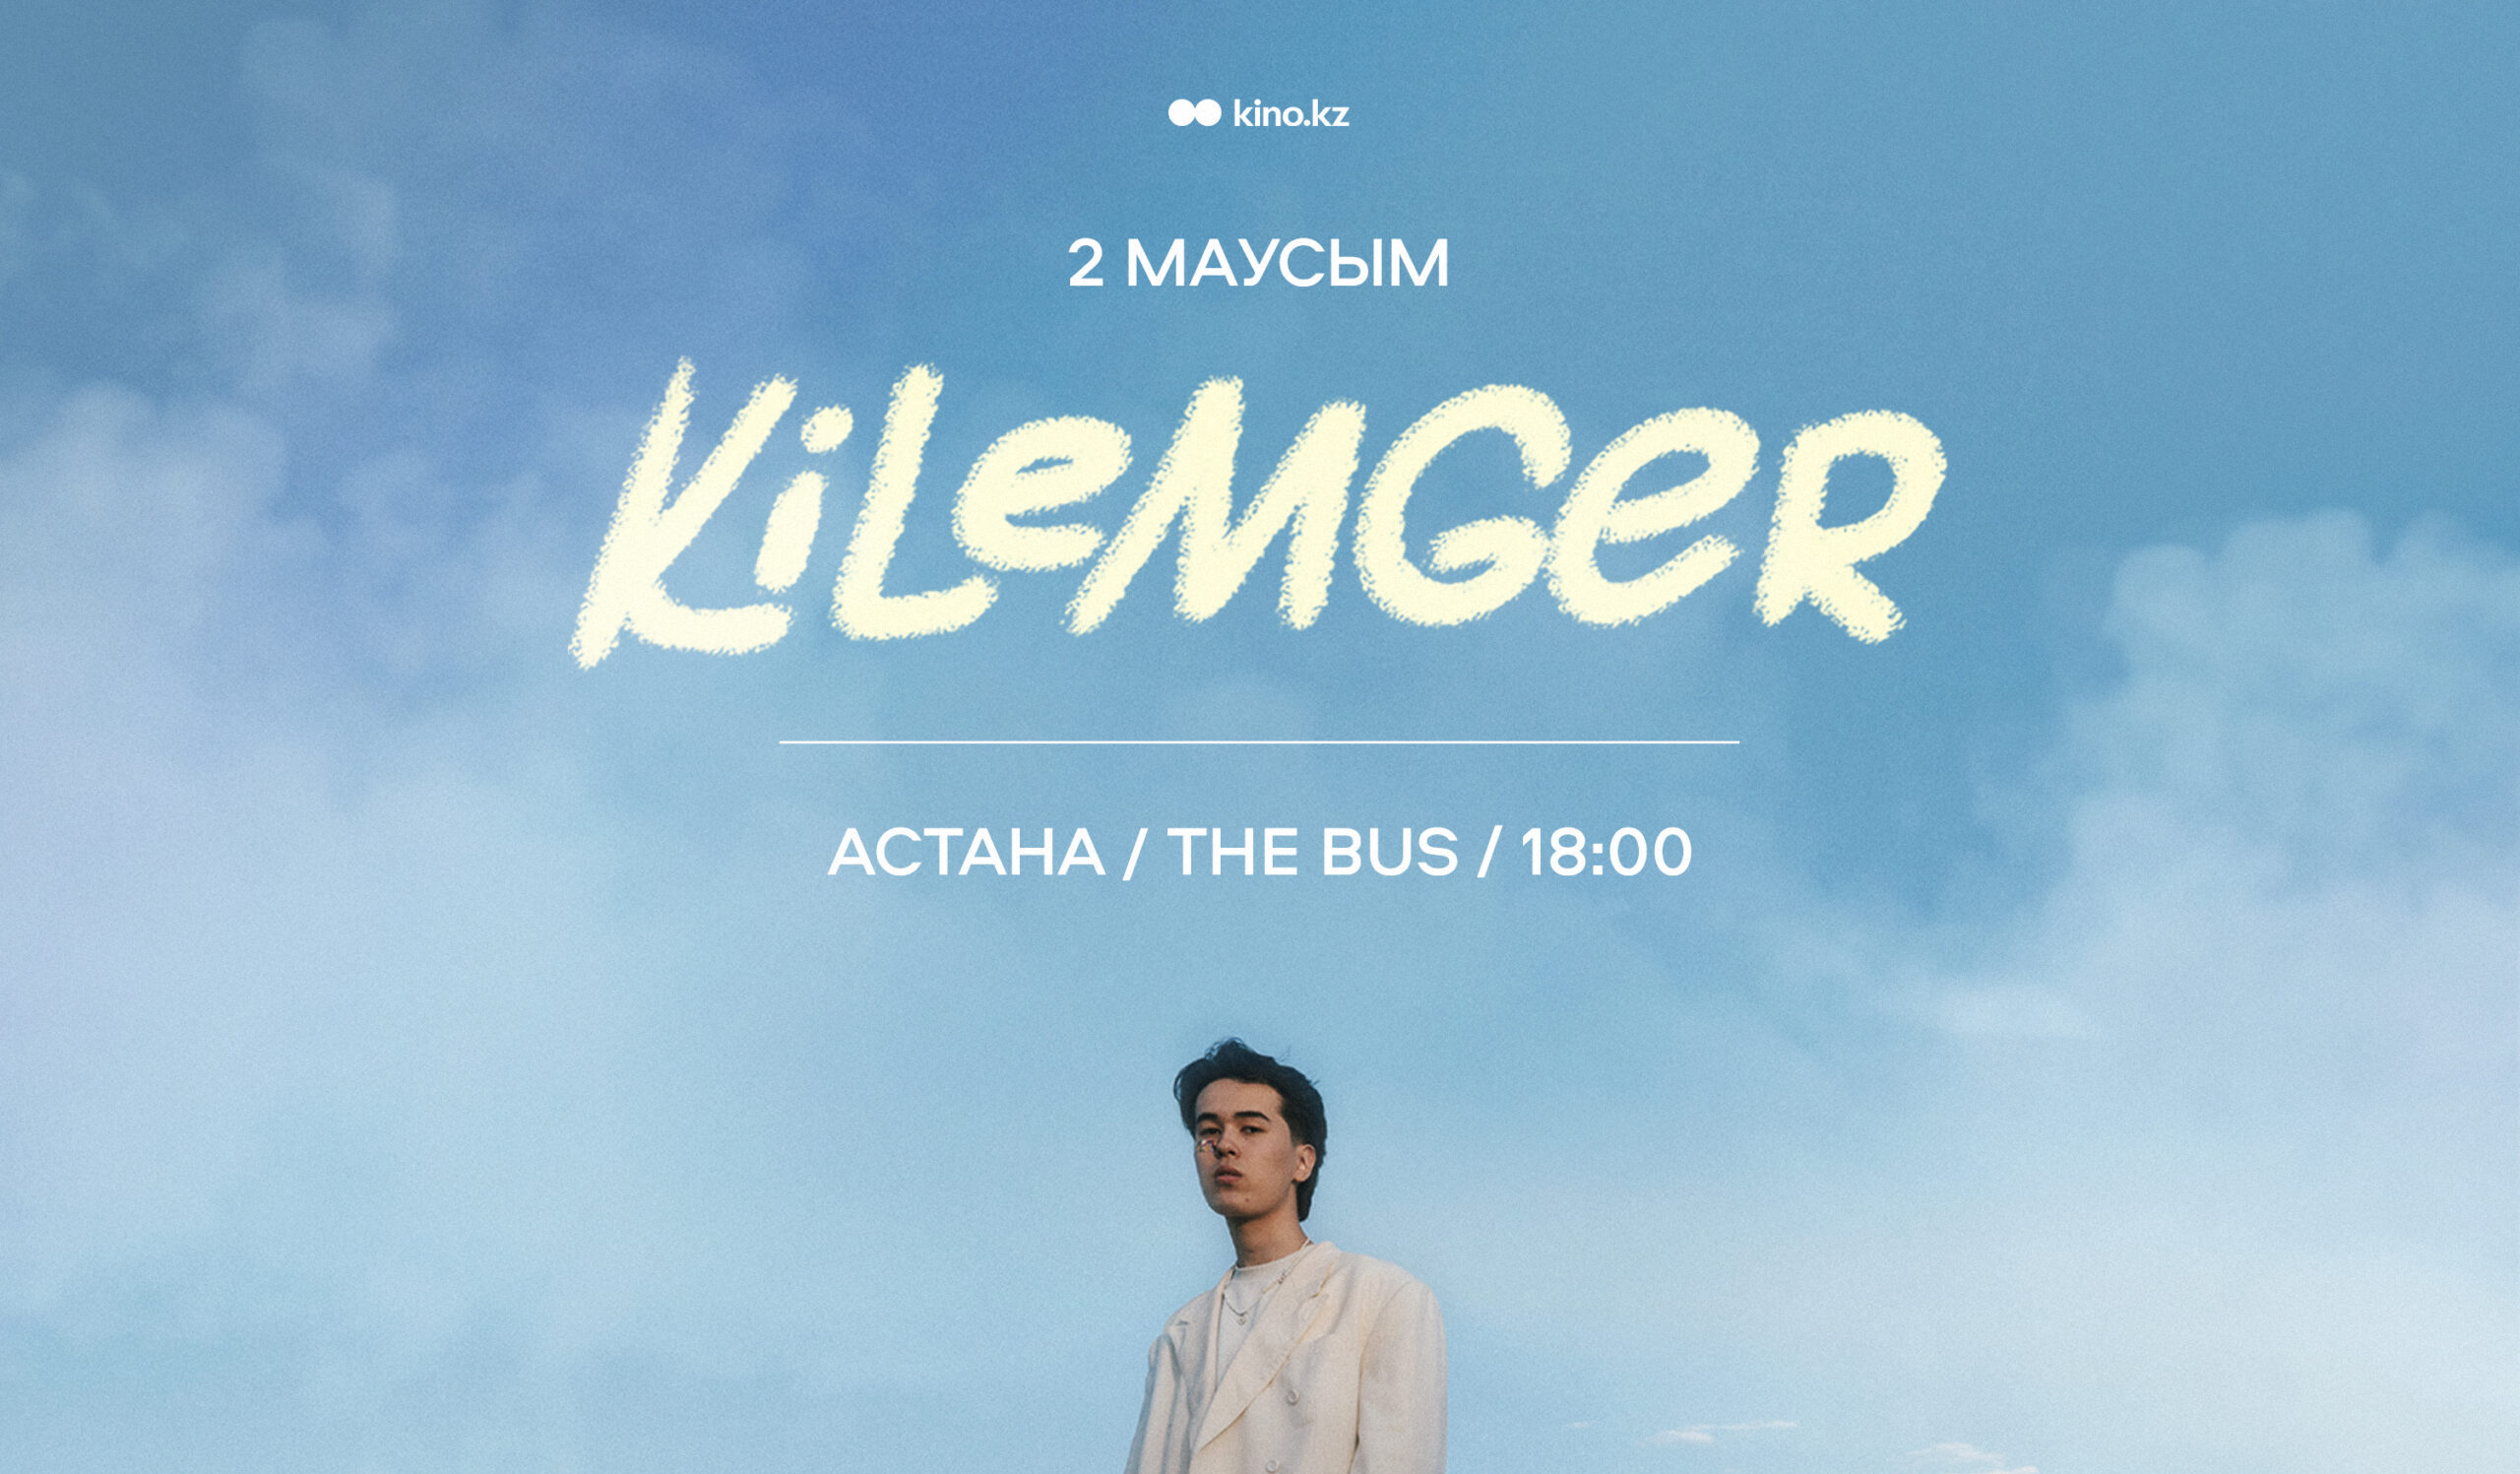 Идём на сольный концерт kilemger в Астане